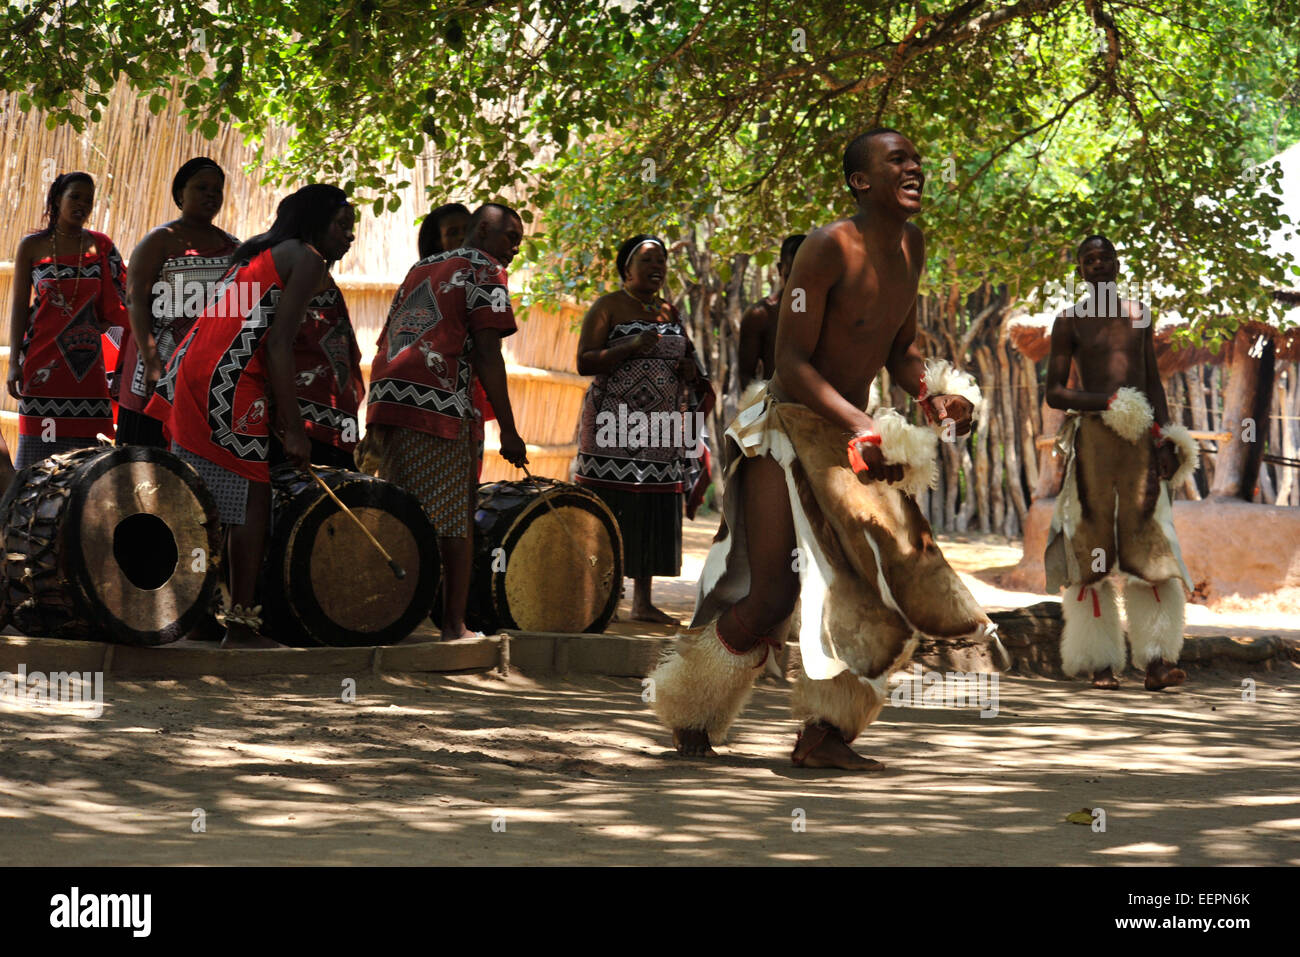 Erwachsene männliche Swazi Tänzerin im krieger kleid, die traditionelle Krieg Tanz mit Musikern und Sängern unterhalten Touristen, Matsamo, Swasiland Stockfoto